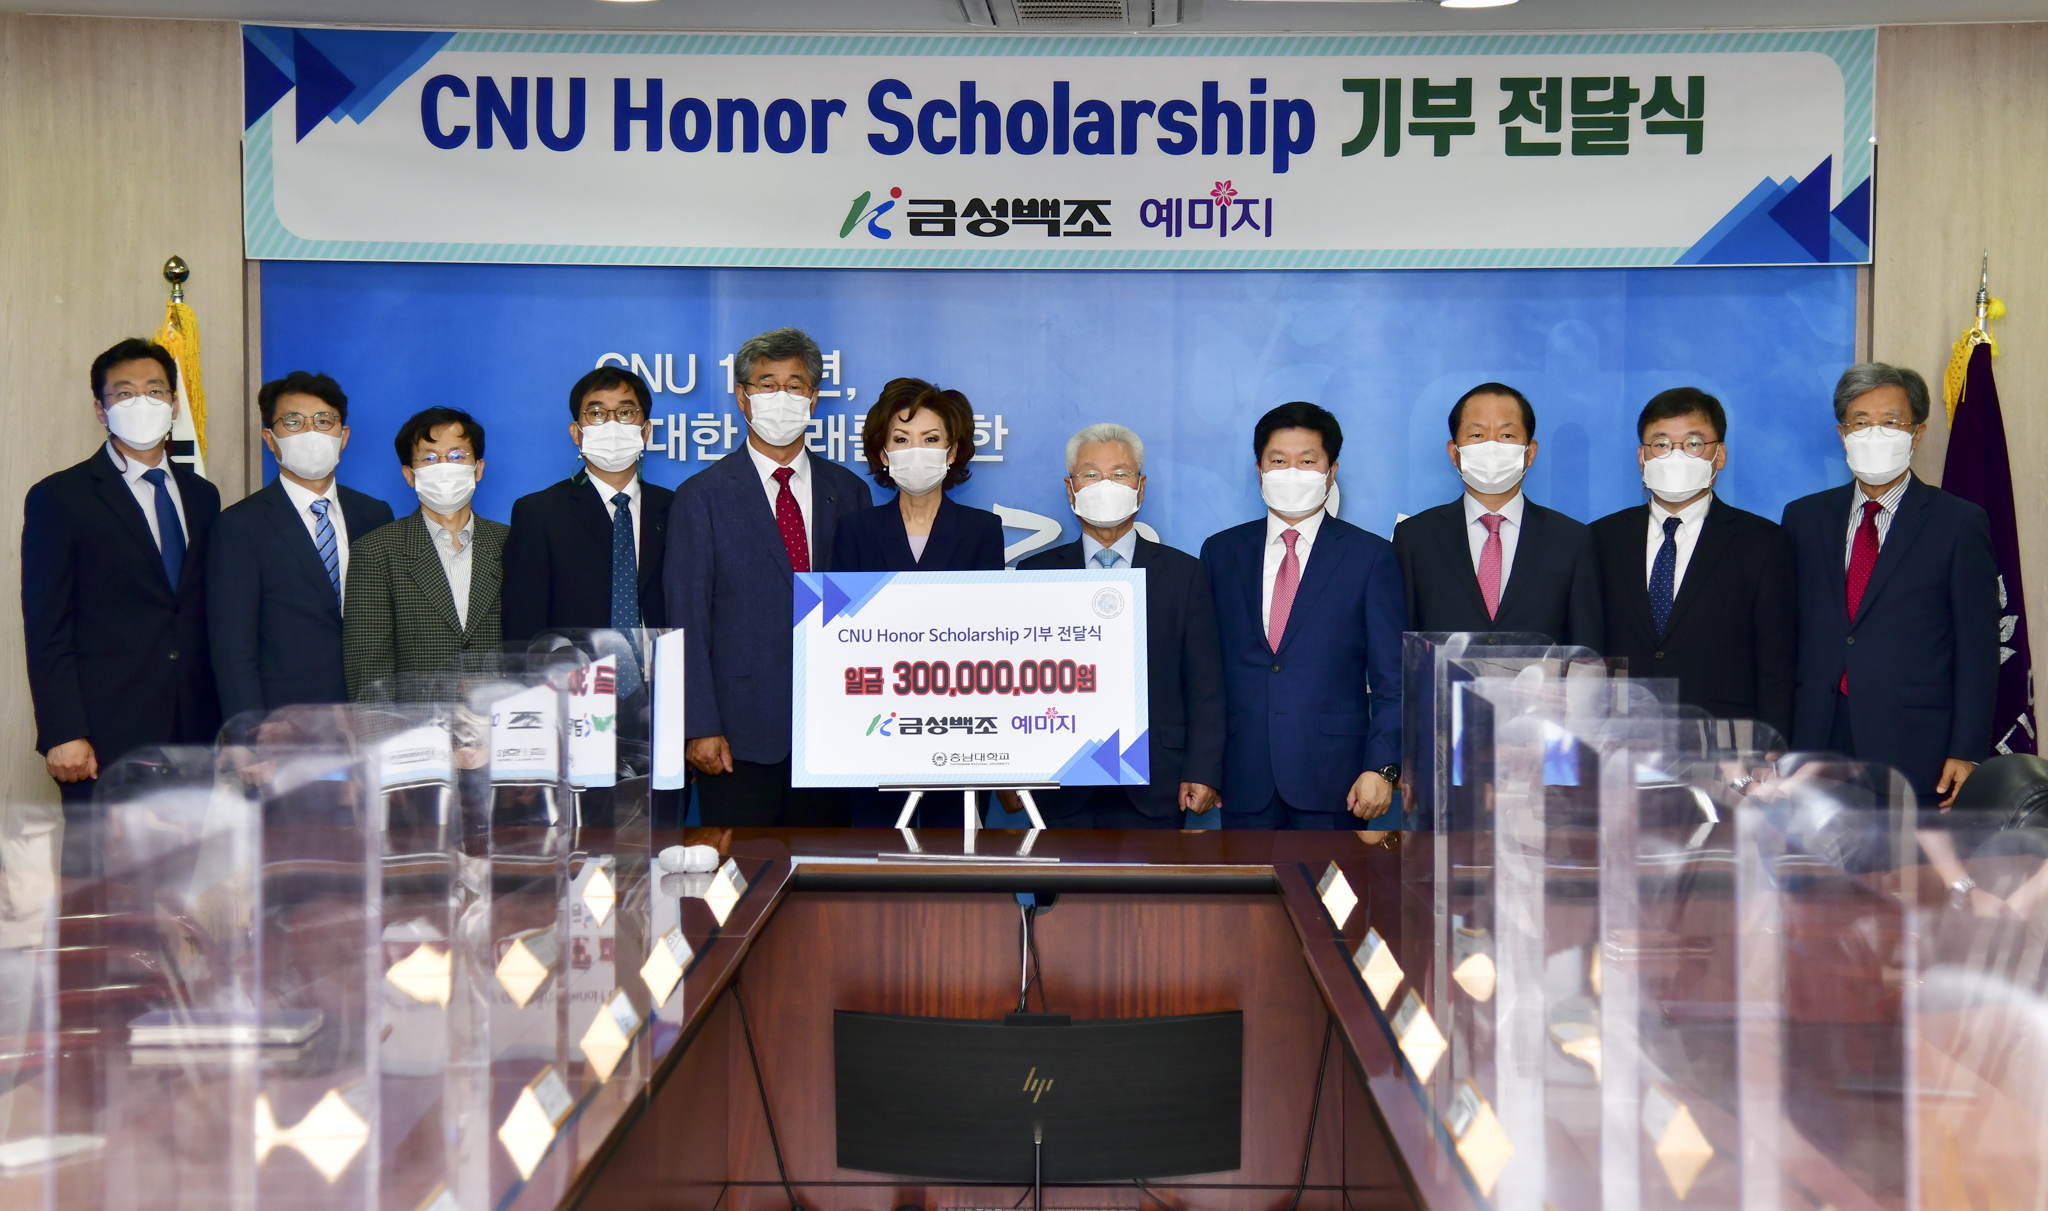 금성백조주택 정성욱 회장, ‘CNU Honor Scholarship’ 장학기금 3억원 기부 사진1